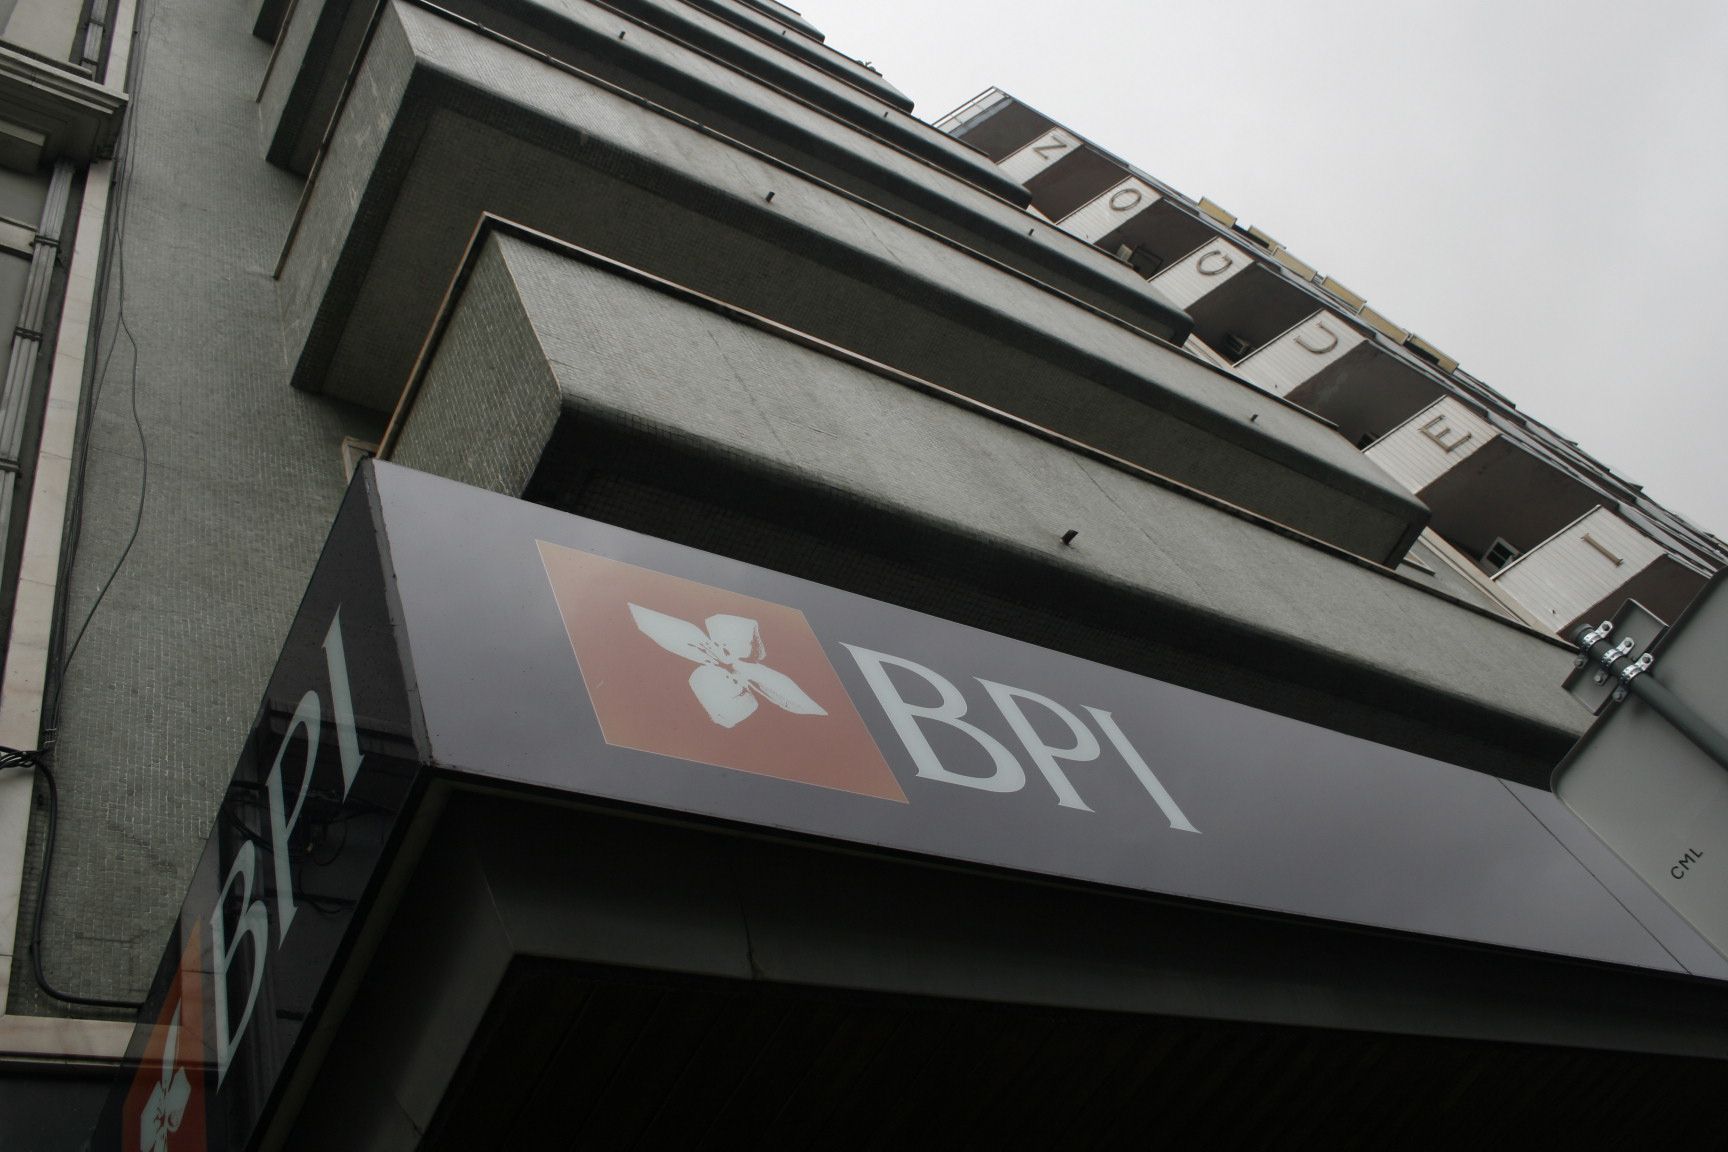 BPI: Violas admite que OPA espanhola vai mesmo avançar